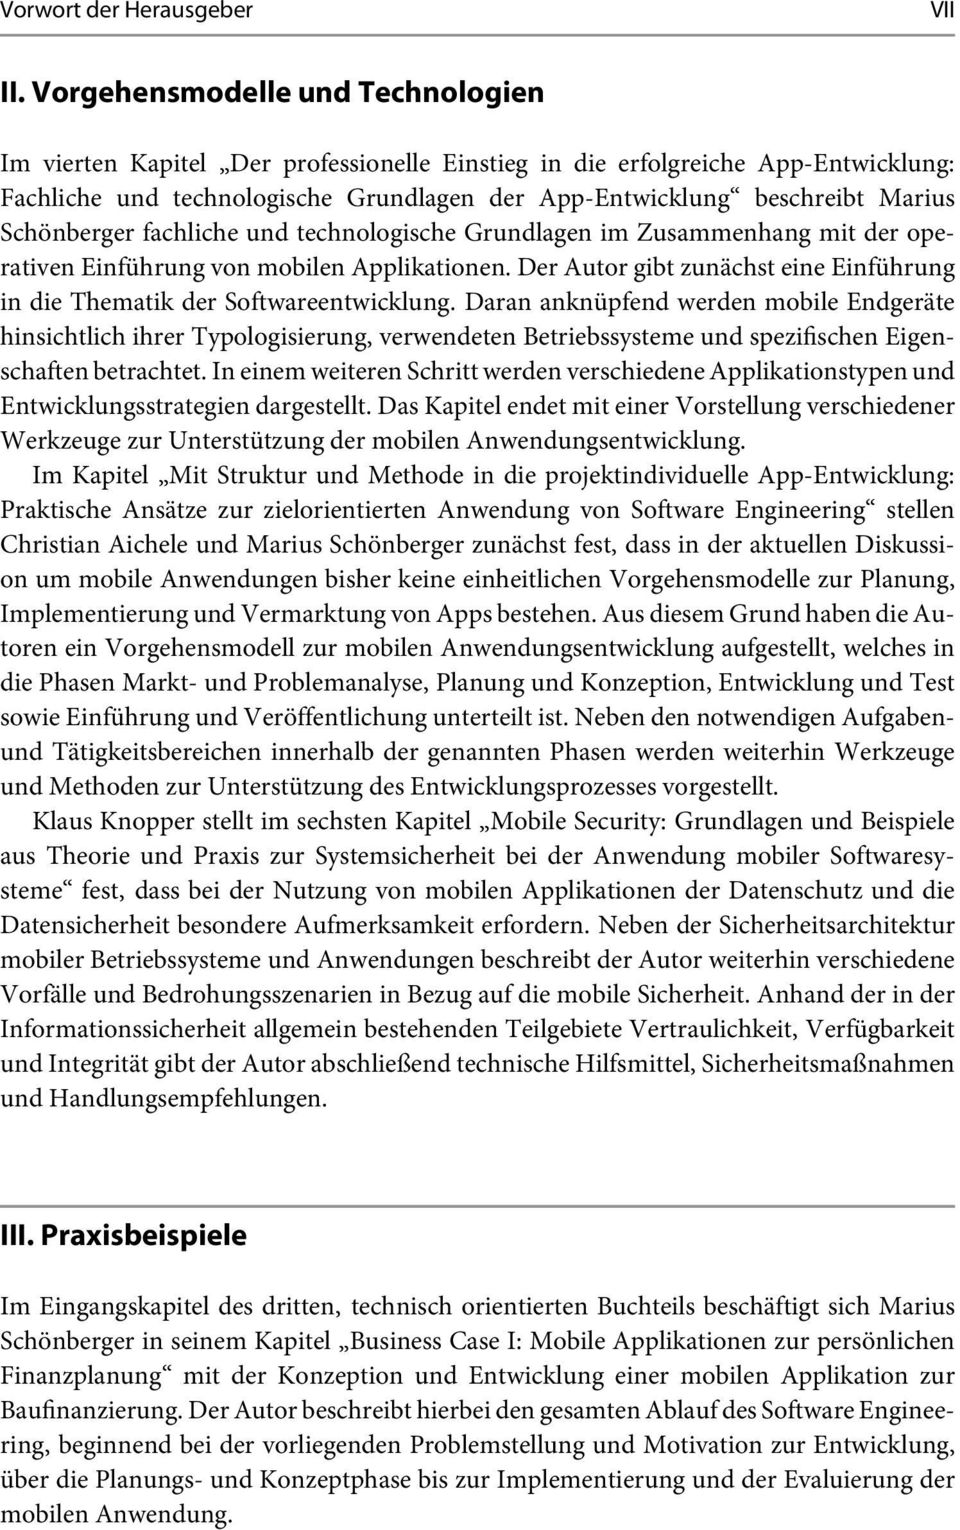 Schönberger fachliche und technologische Grundlagen im Zusammenhang mit der operativen Einführung von mobilen Applikationen.